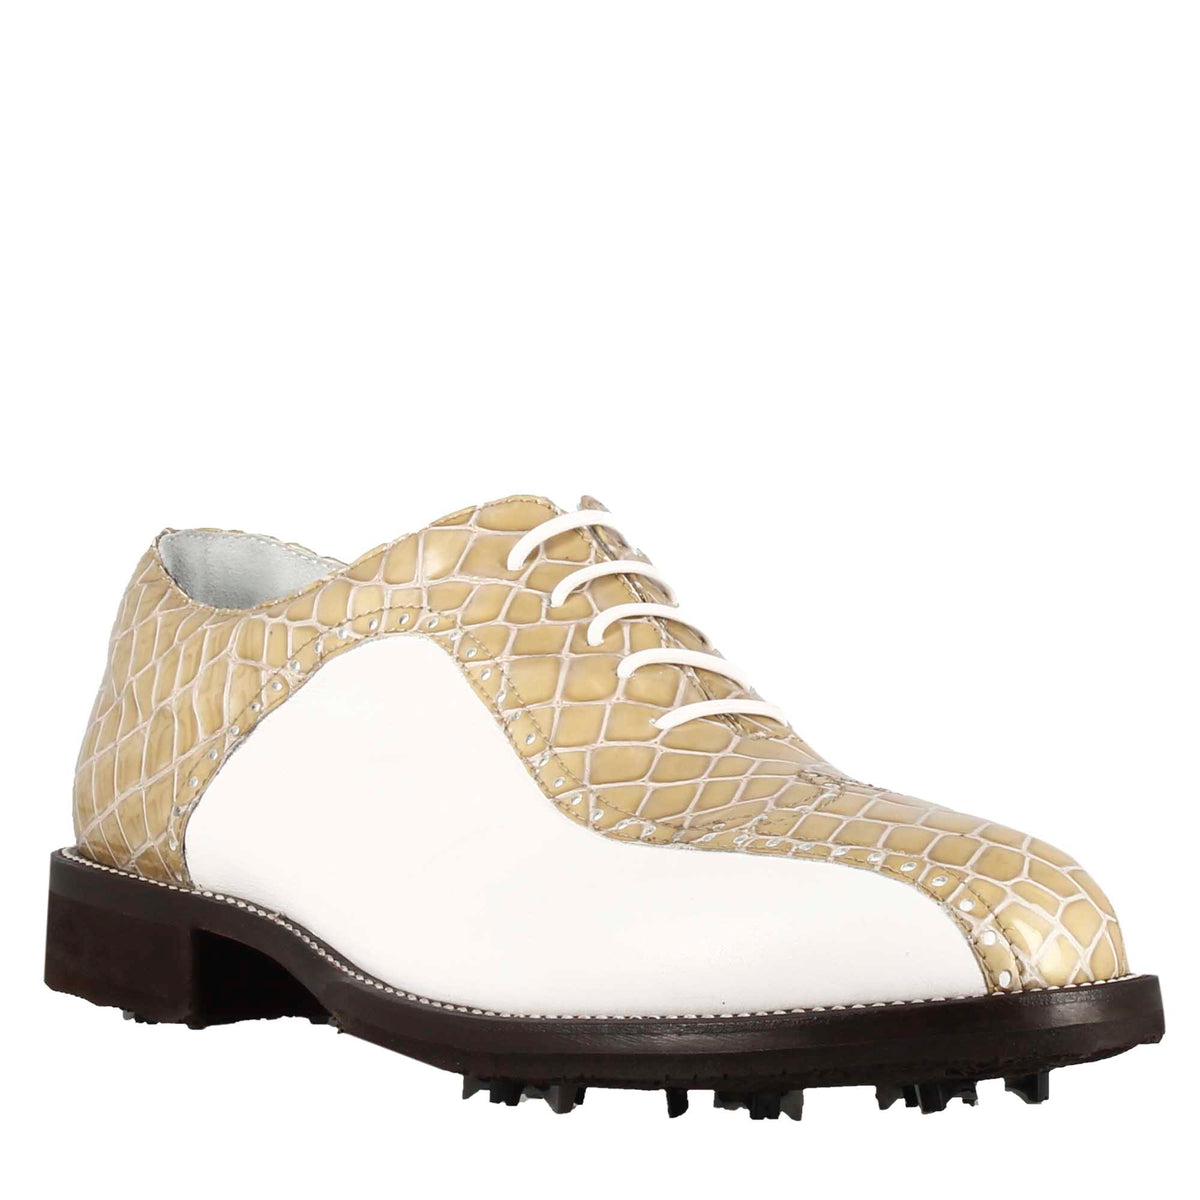 Chaussures de golf pour homme en cuir bicolore blanc et beige imprimé crocodile